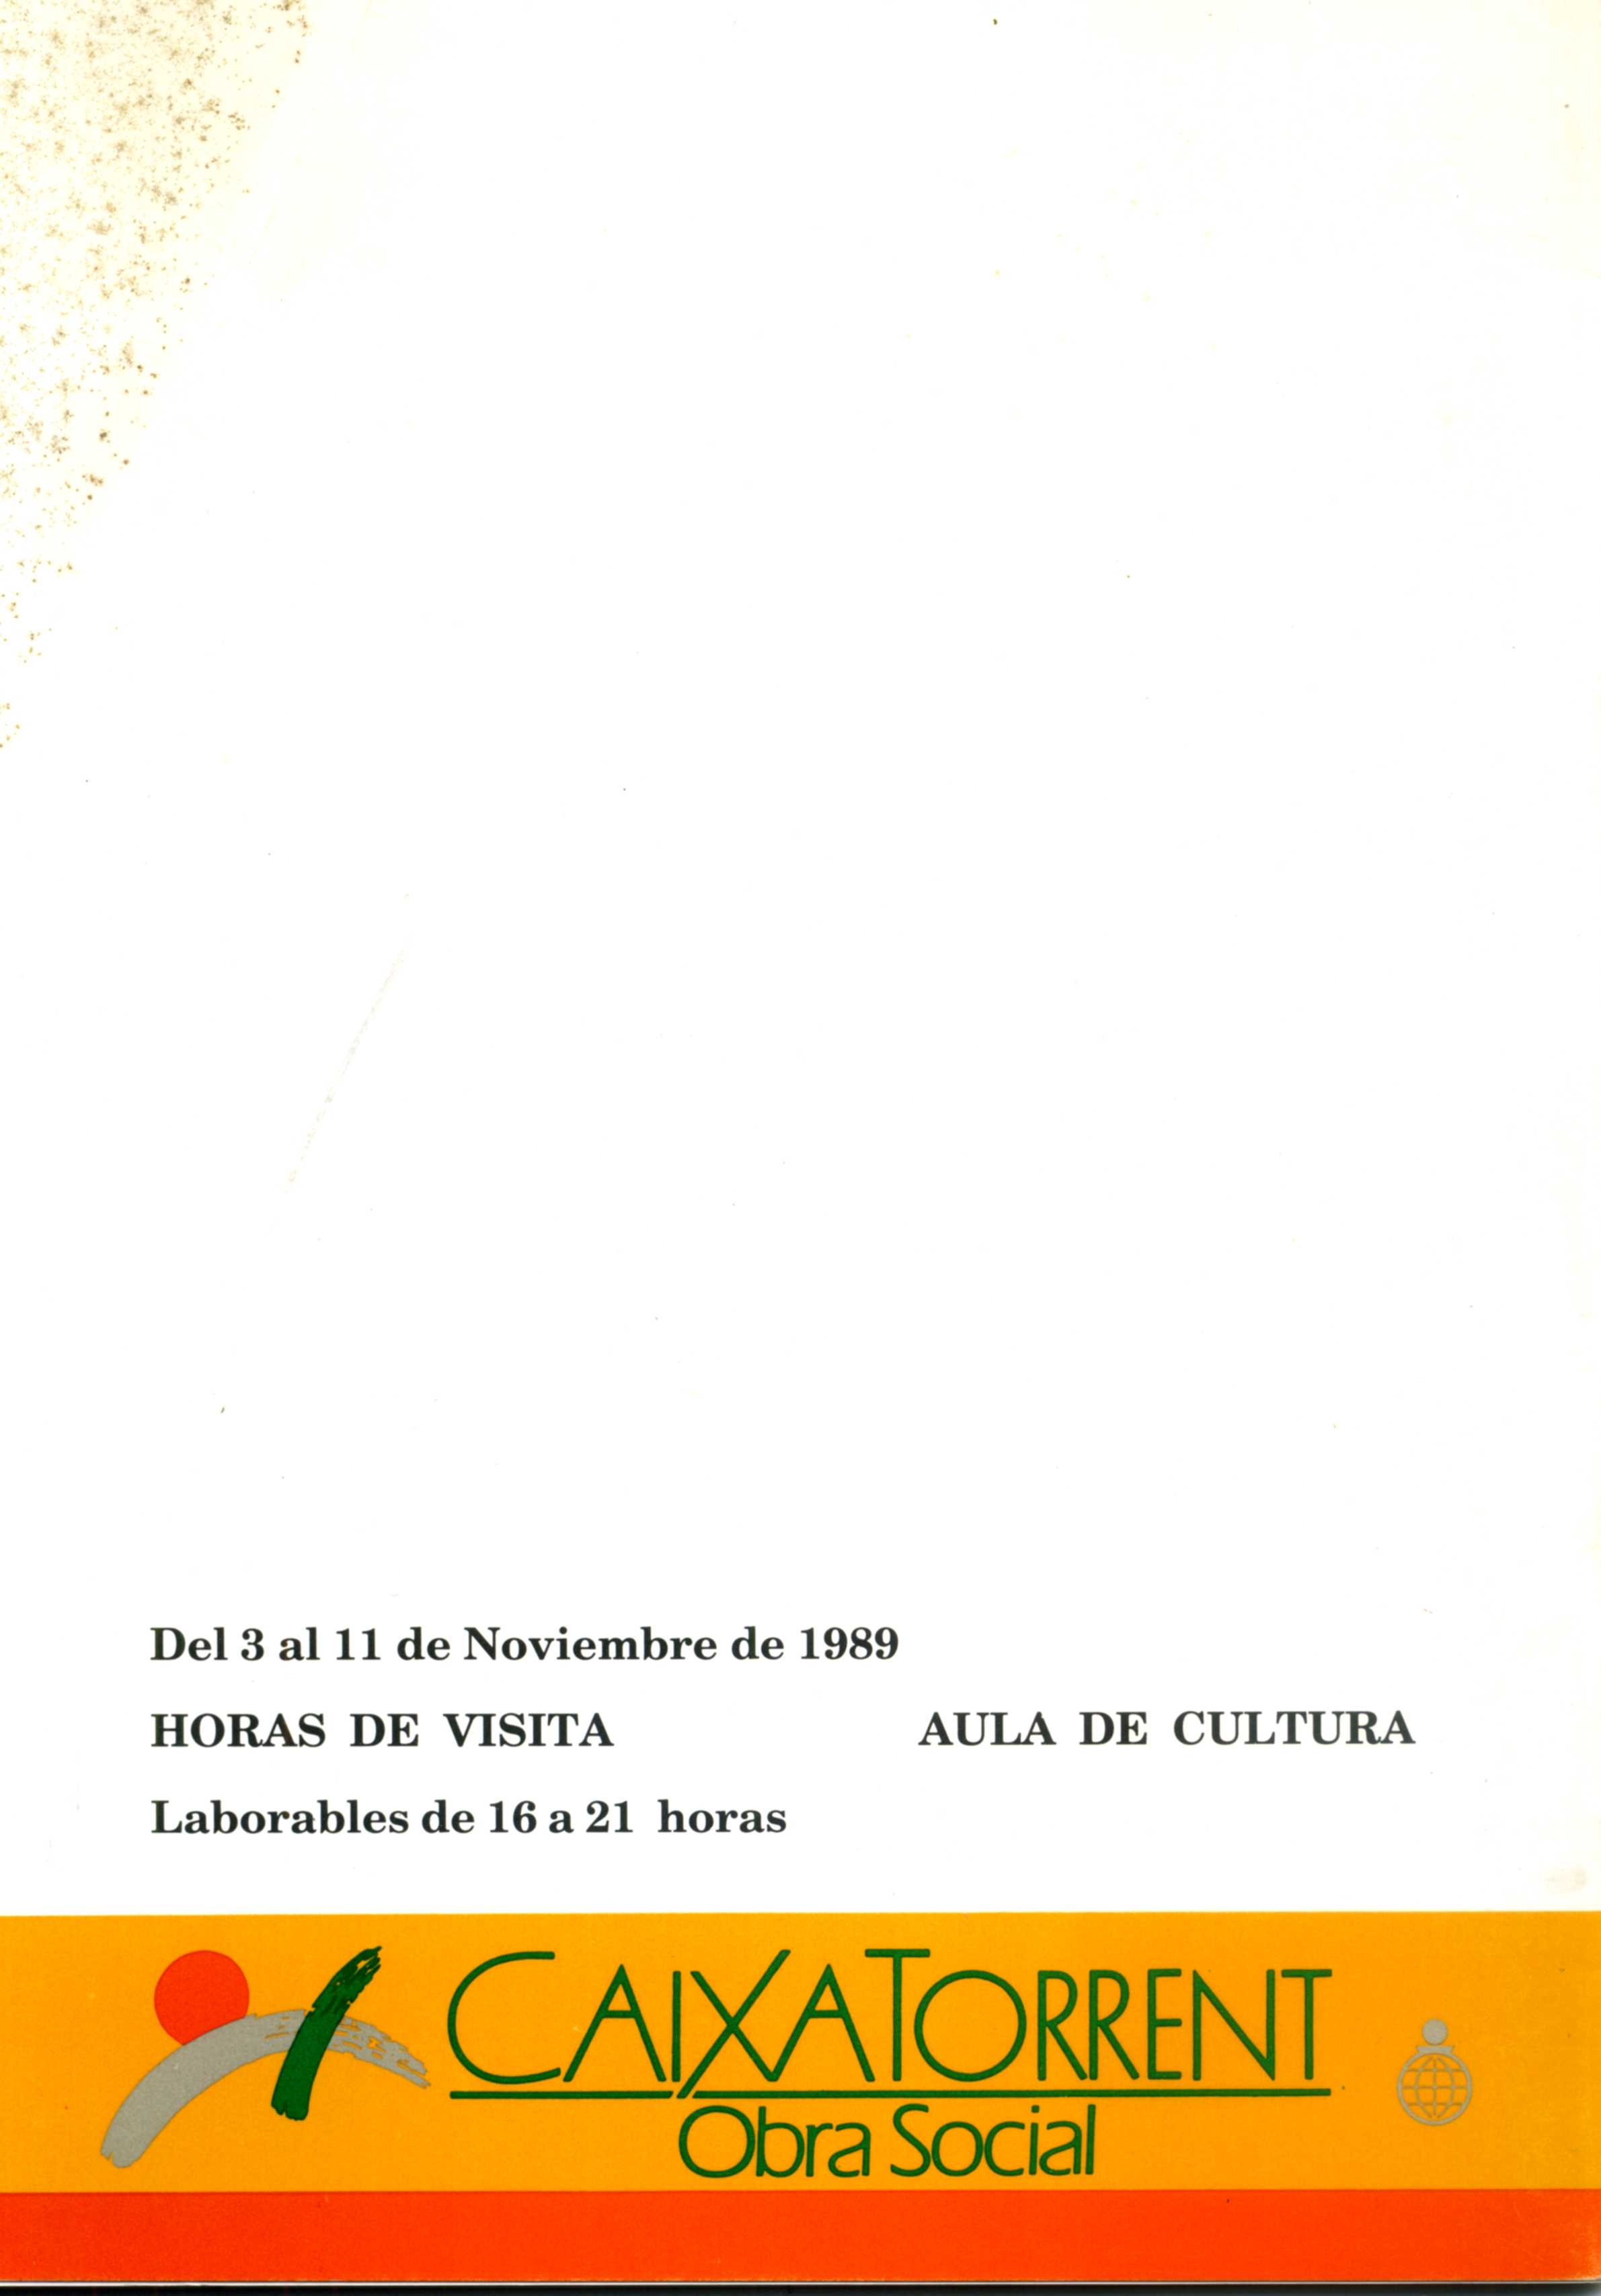 CEL-DO-A0118 - Paco Valero (1)